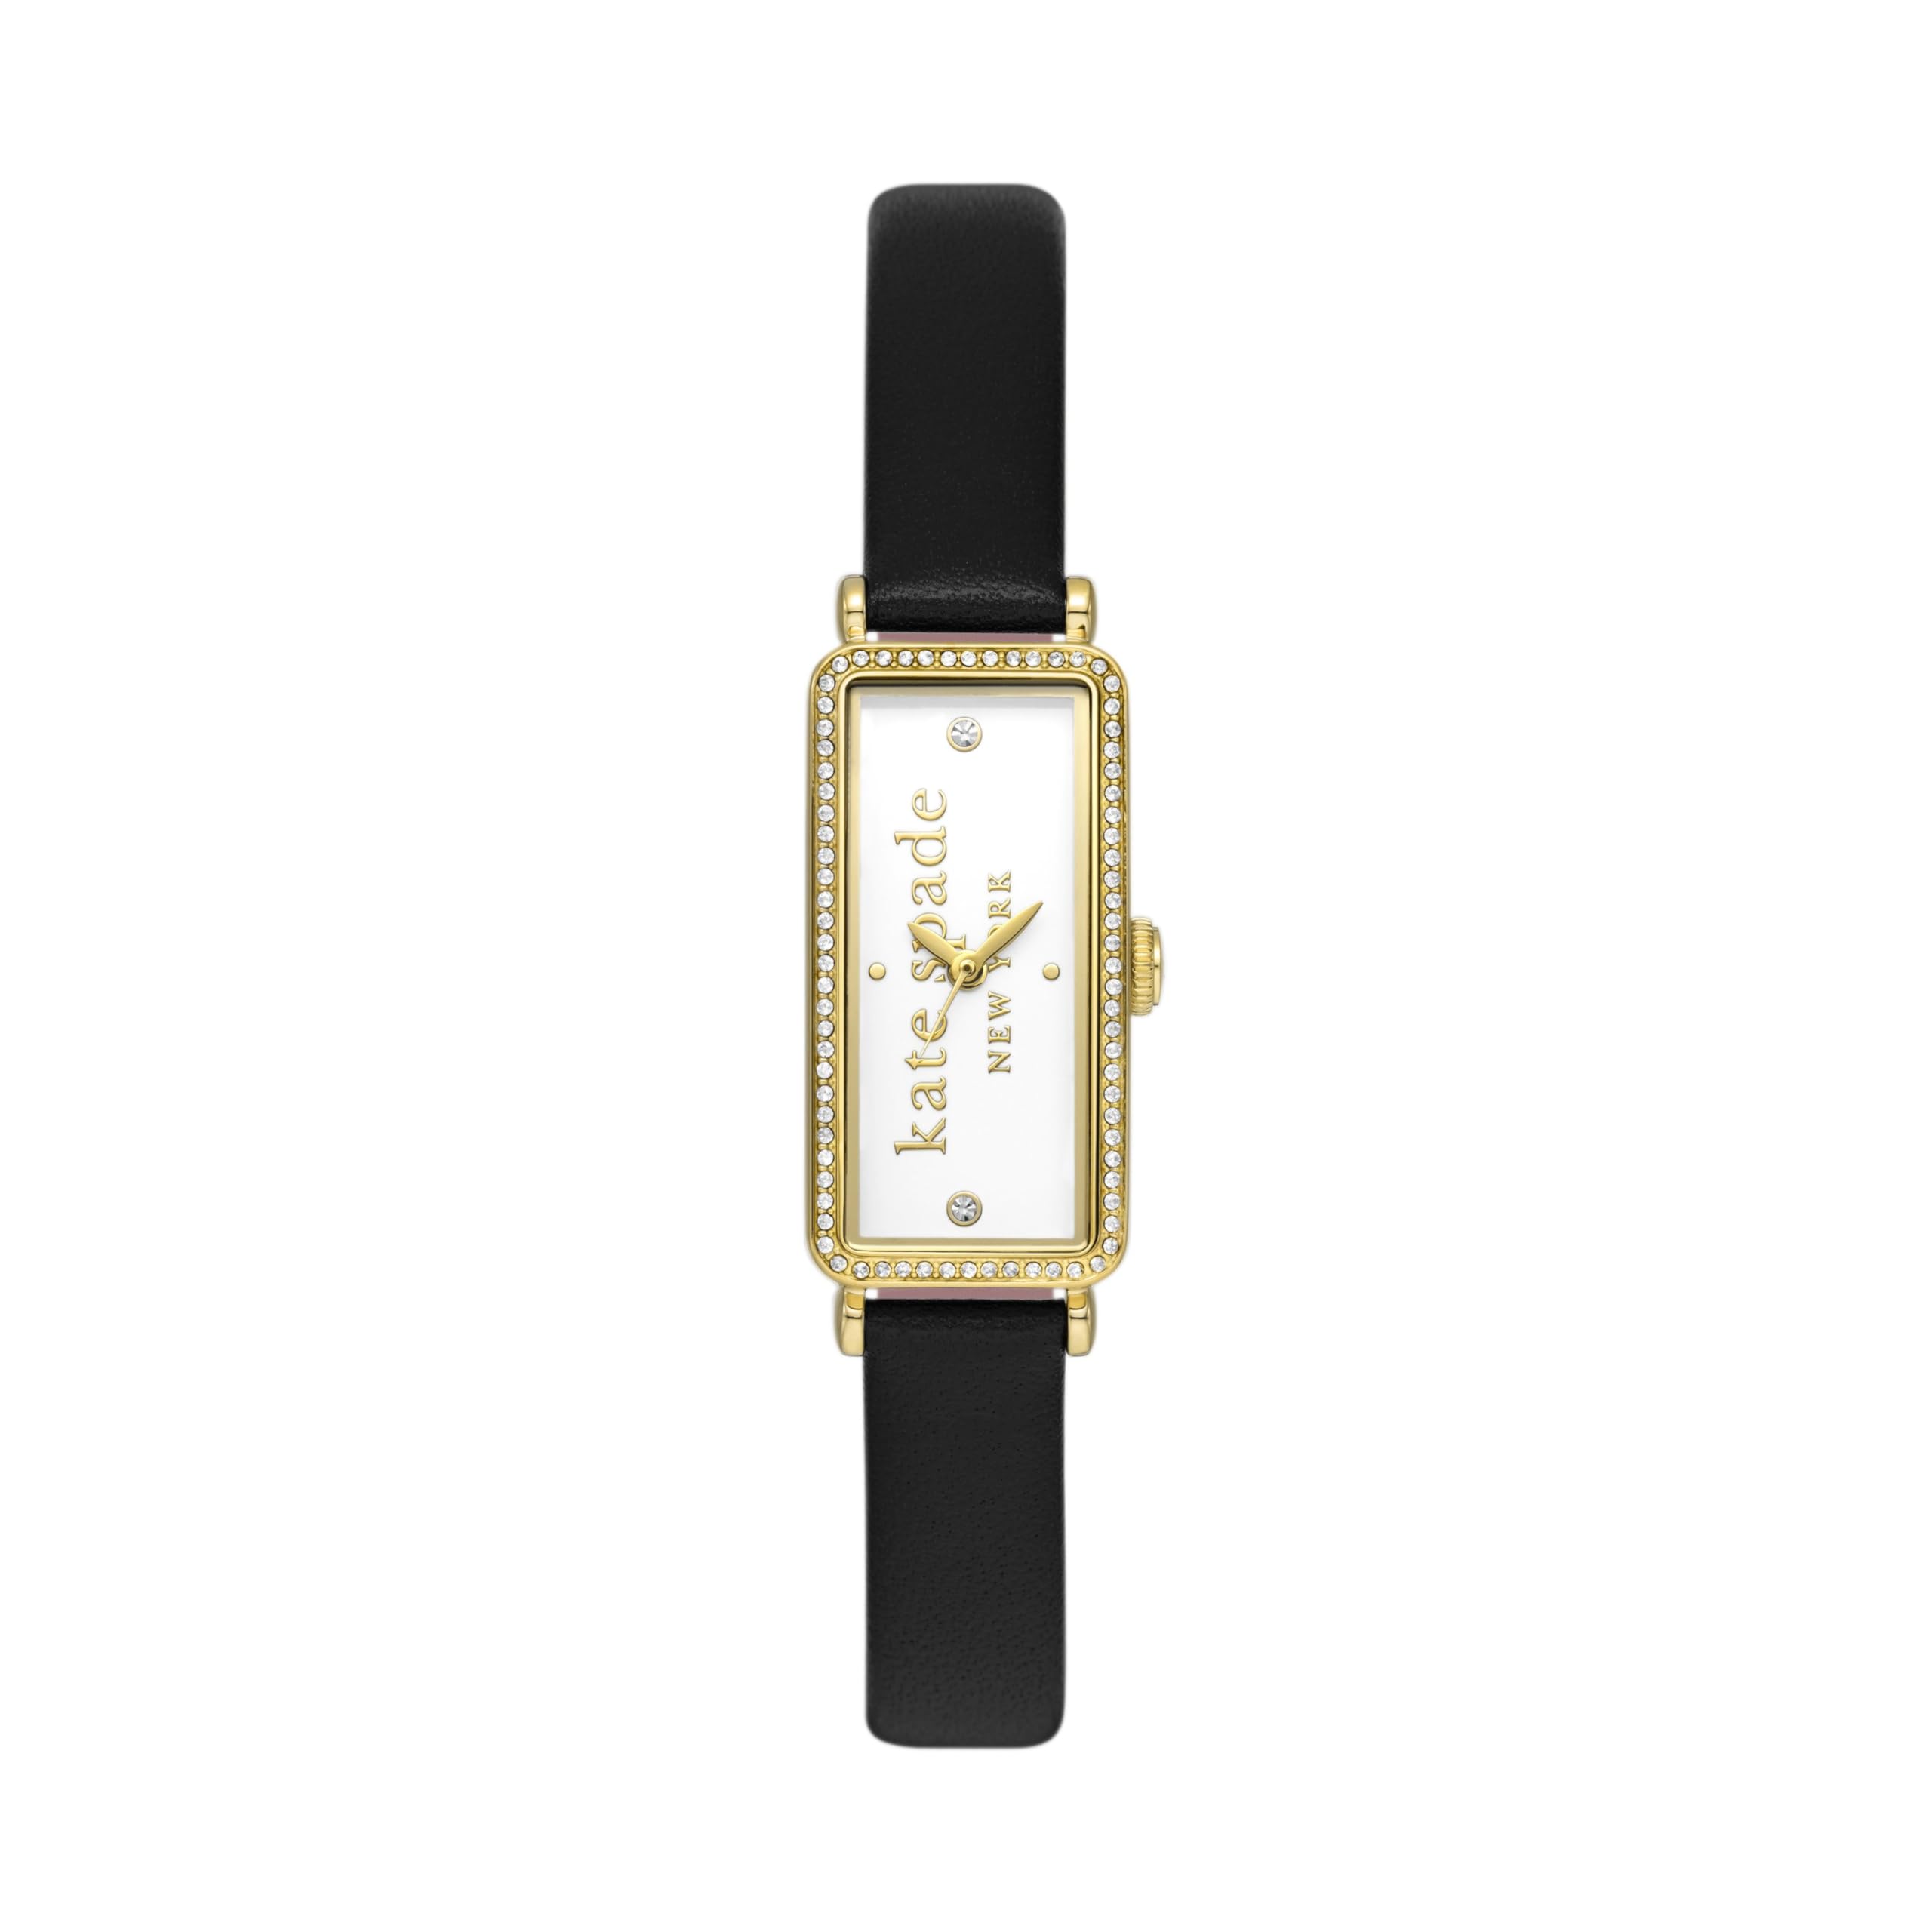 Черные кожаные часы Rosedale - KSW1817 Kate Spade New York